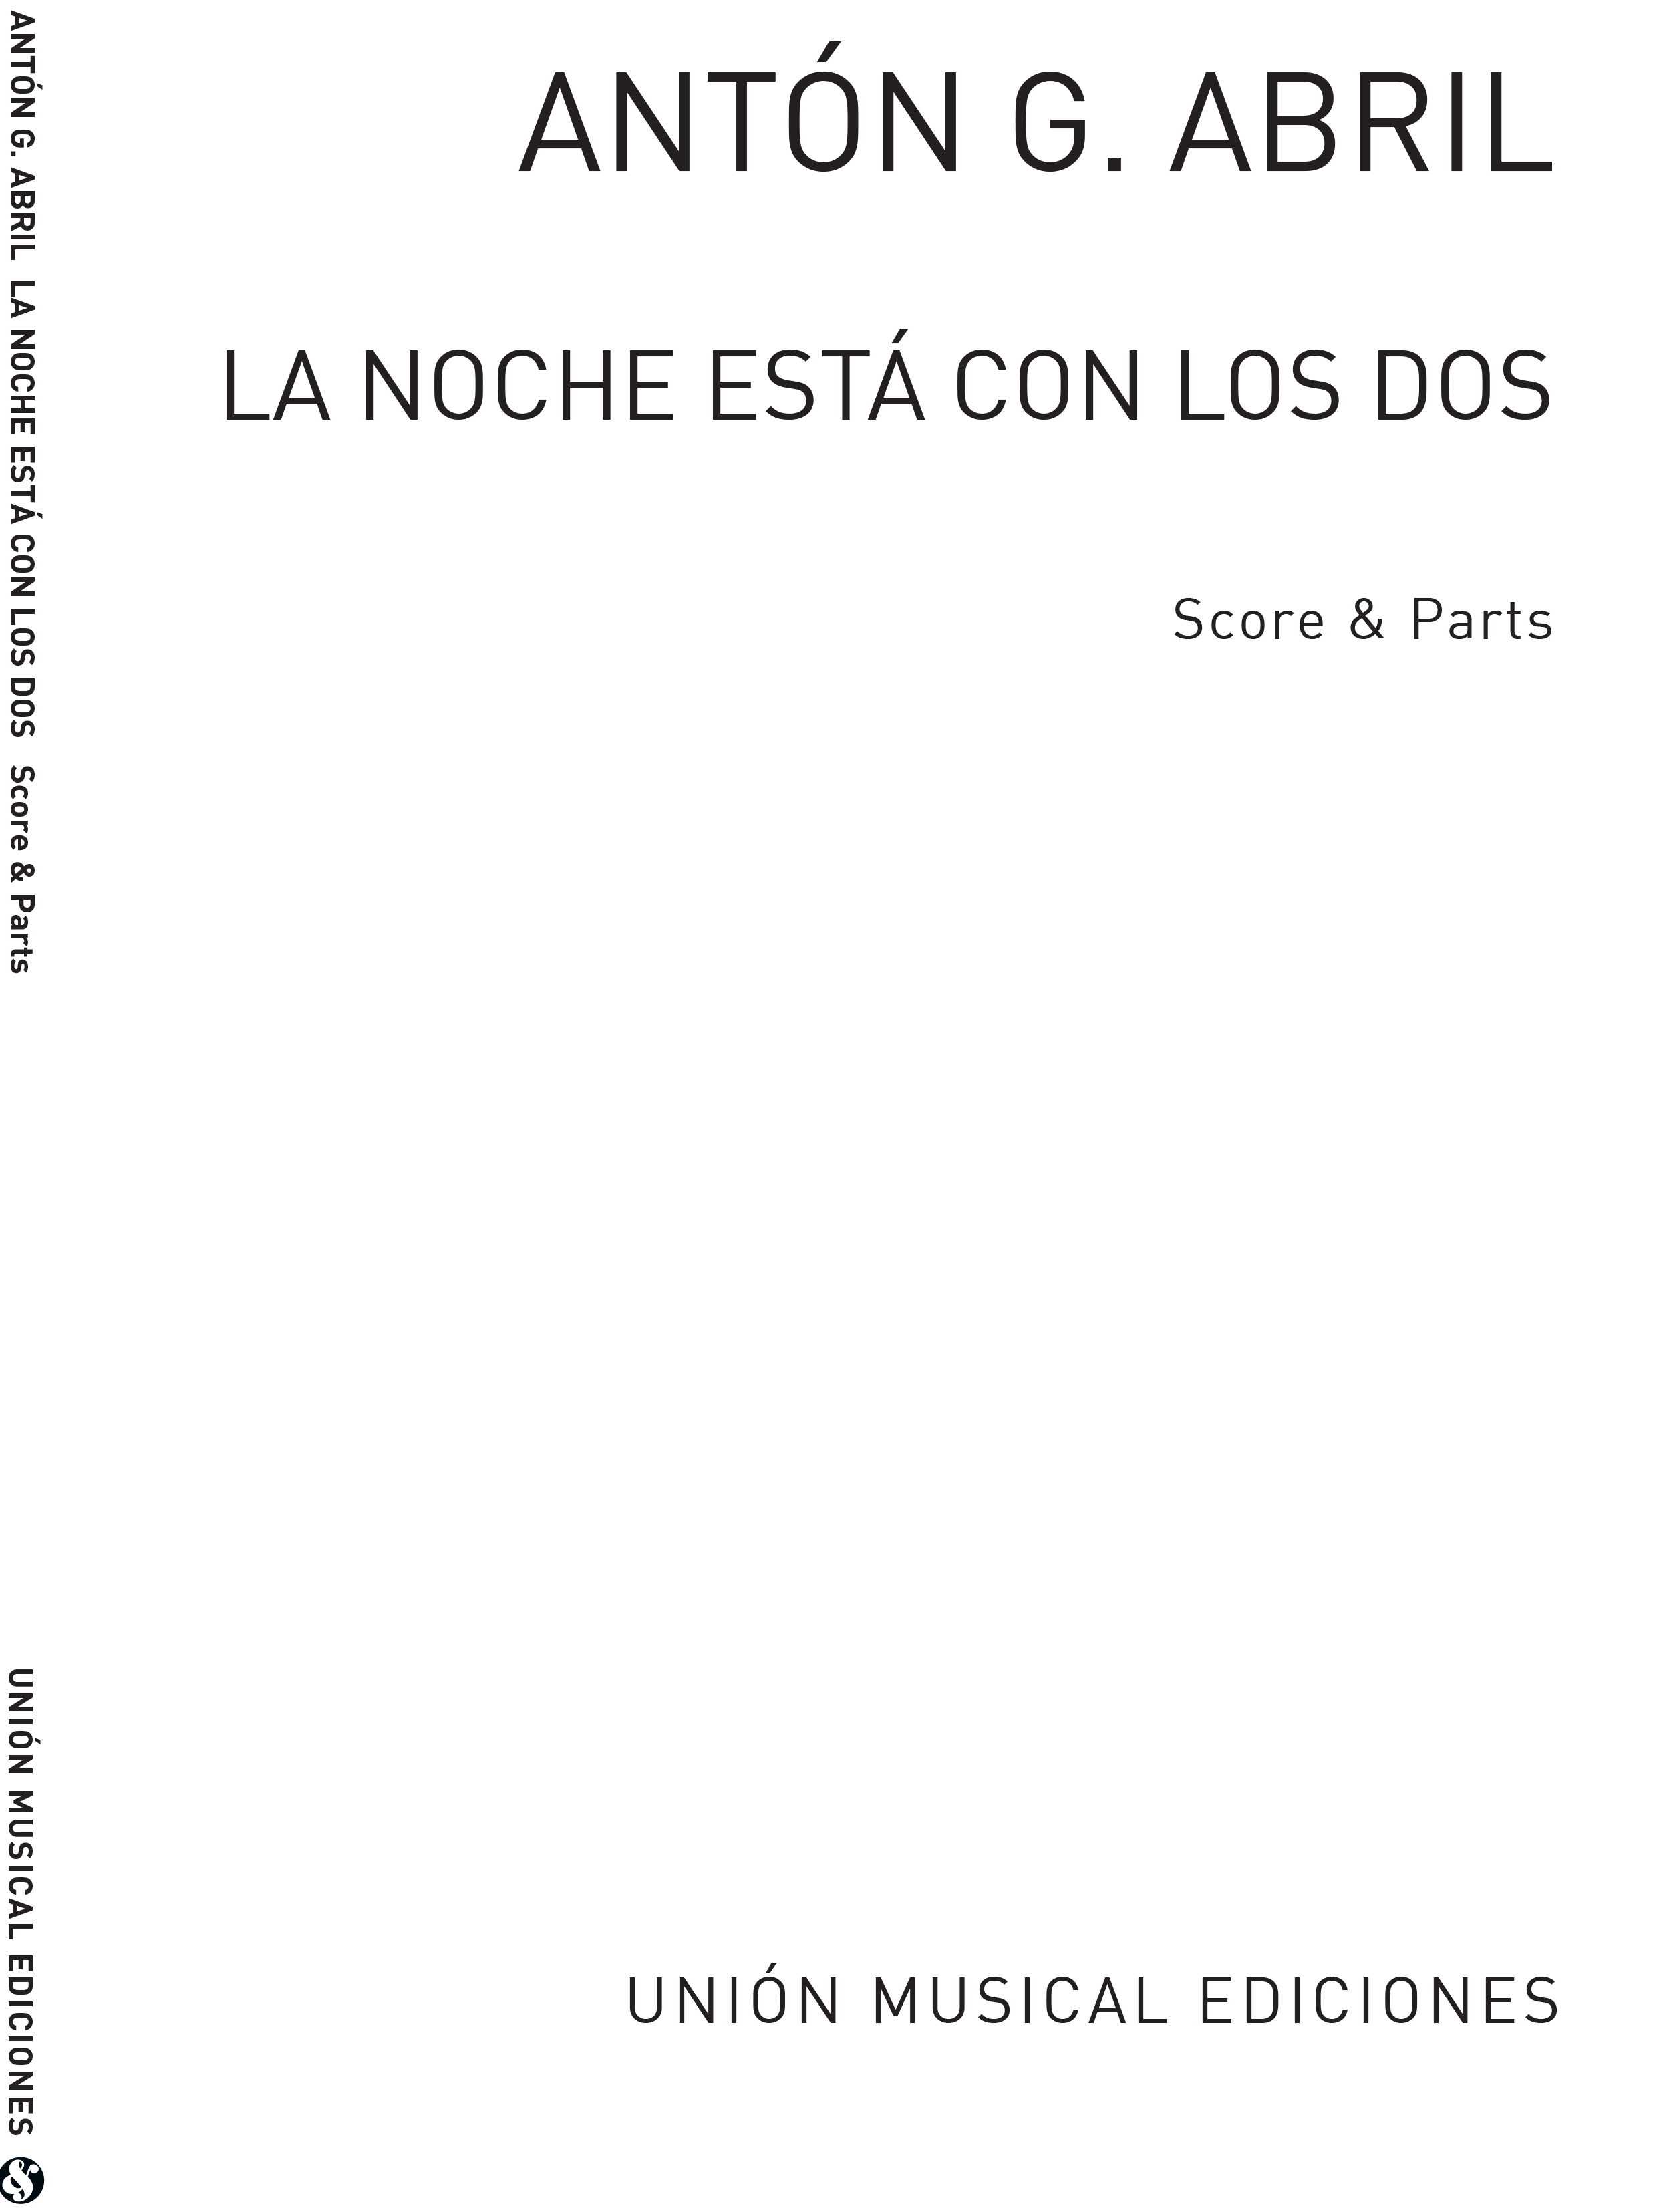 Anton Garcia Abril: La Noche Est Con Los Dos (Score/Parts)